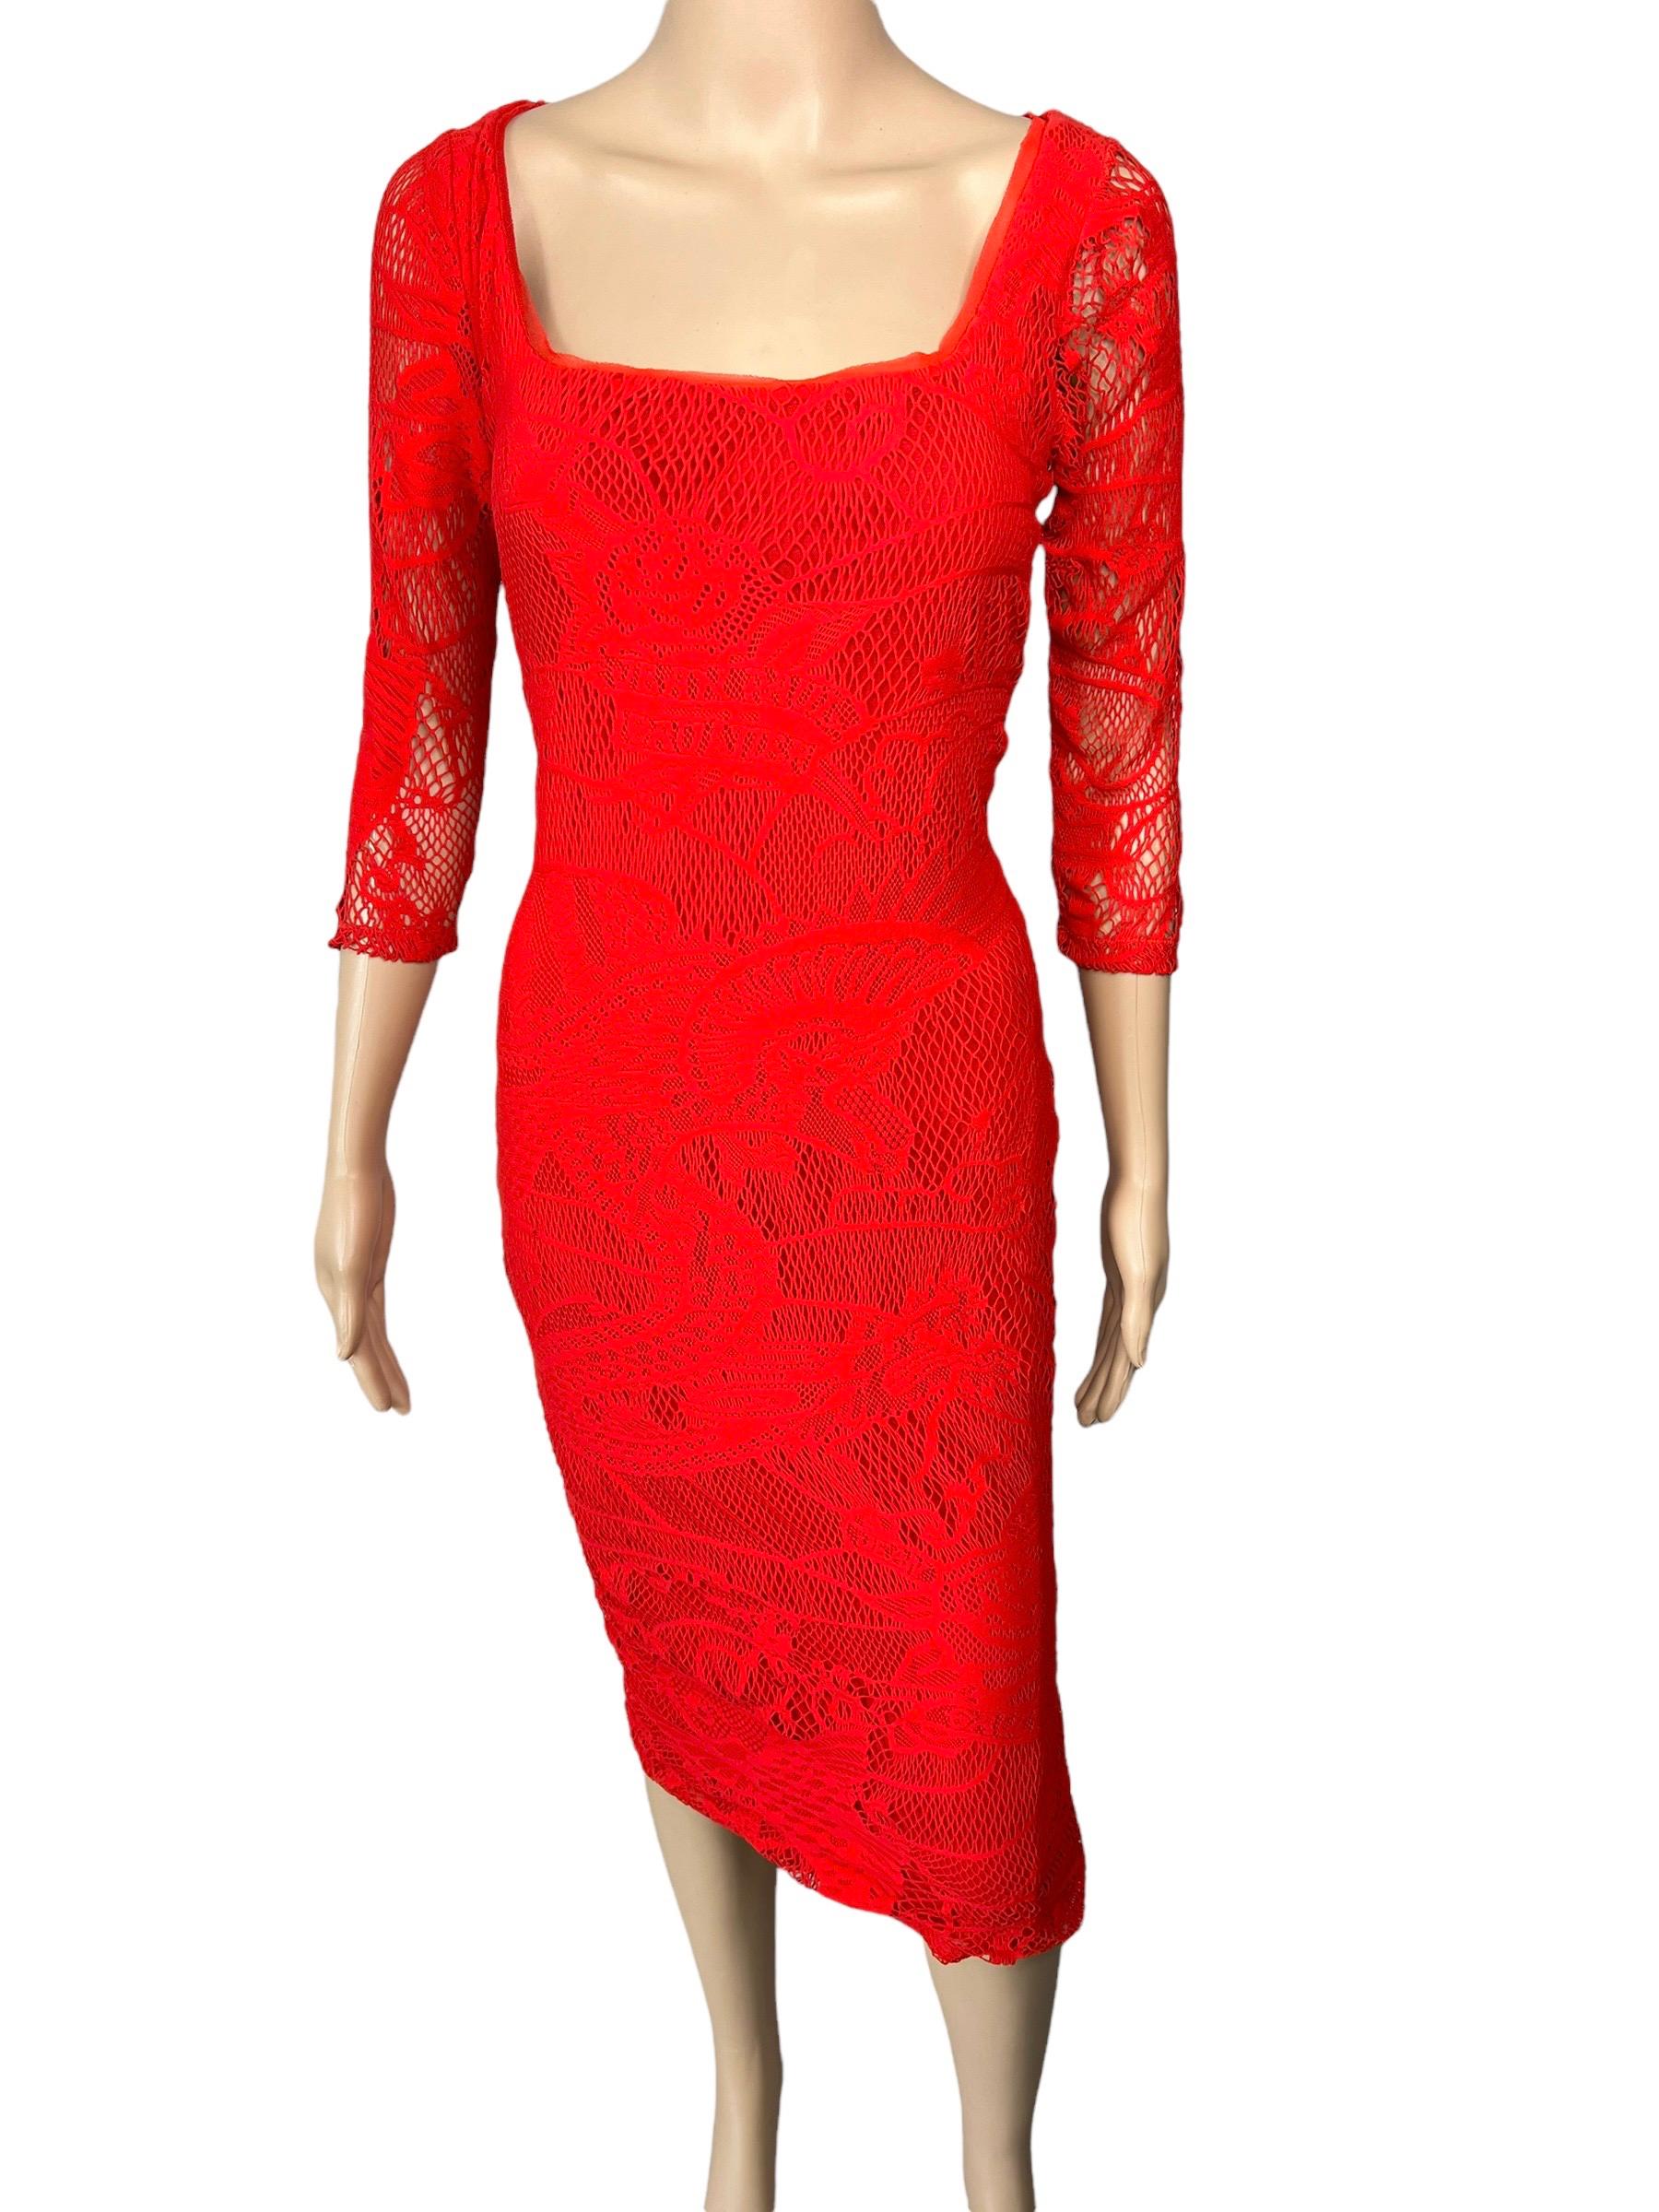 Rouge Jean Paul Gaultier - Robe midi moulante en maille moulante et crochet rouge « Soleil », non portée en vente